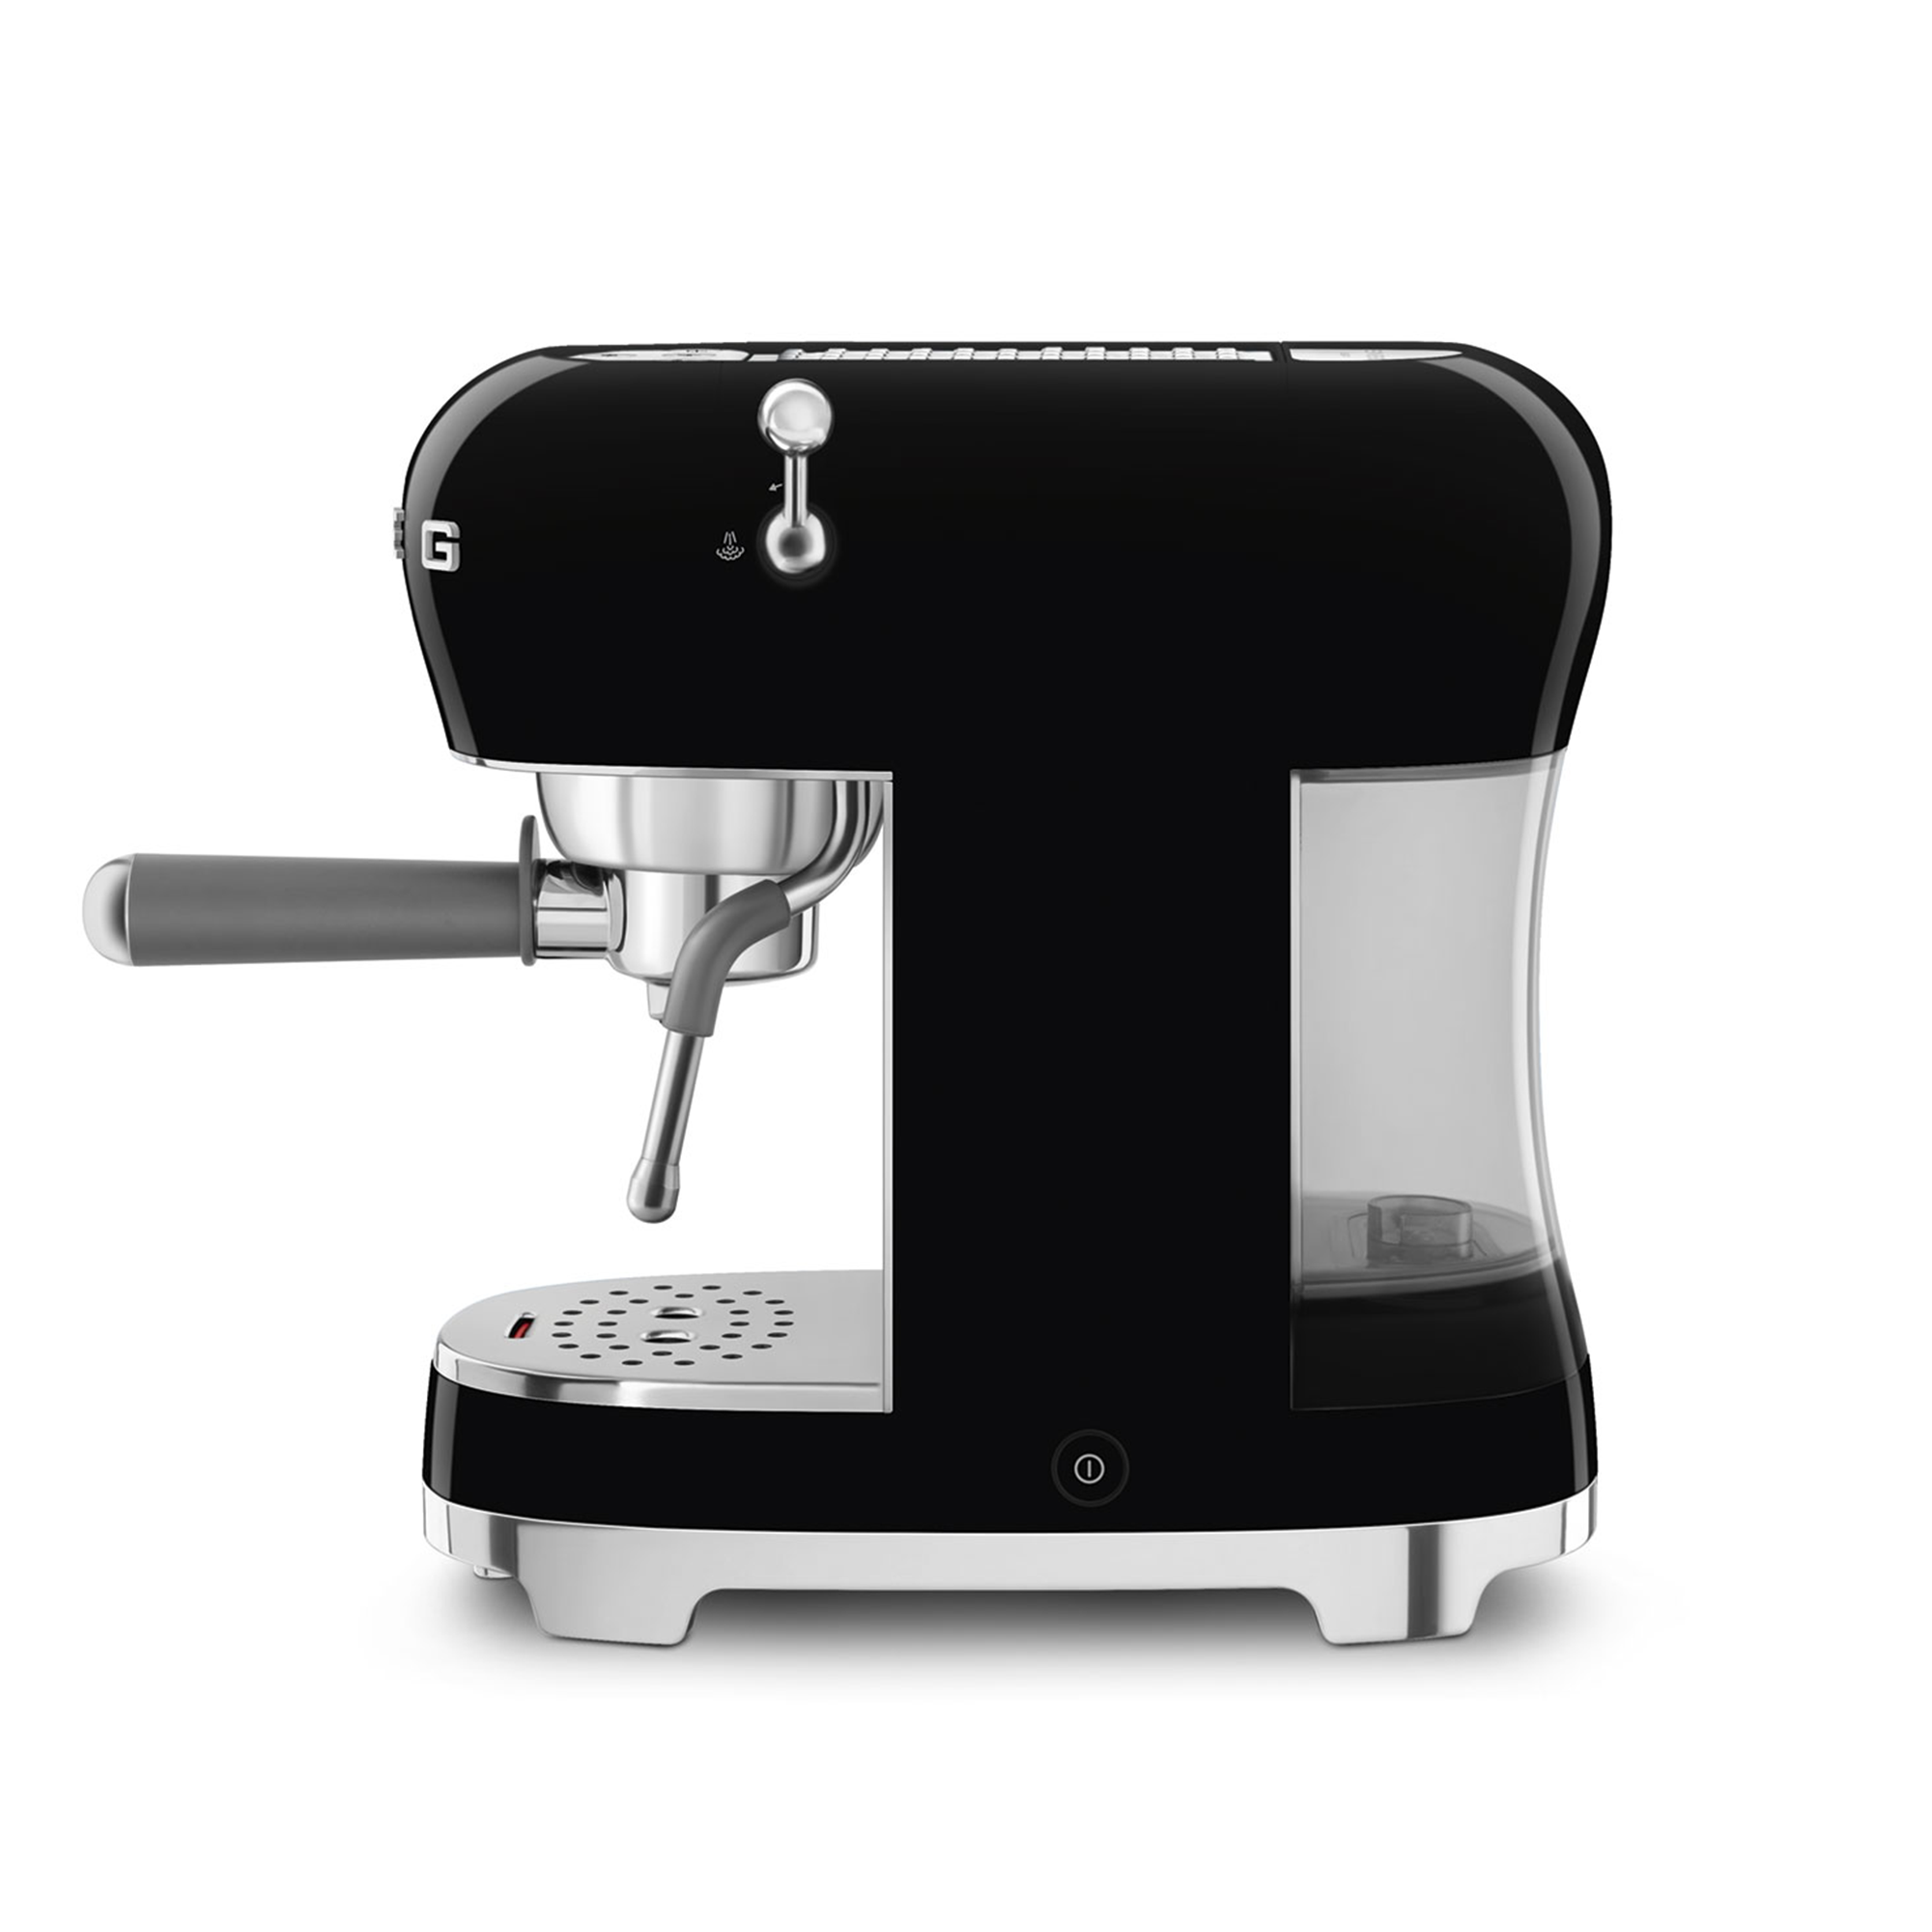 Smeg - Espresso-Kaffeemaschine - Designlinie Stil Der 50° Jahre